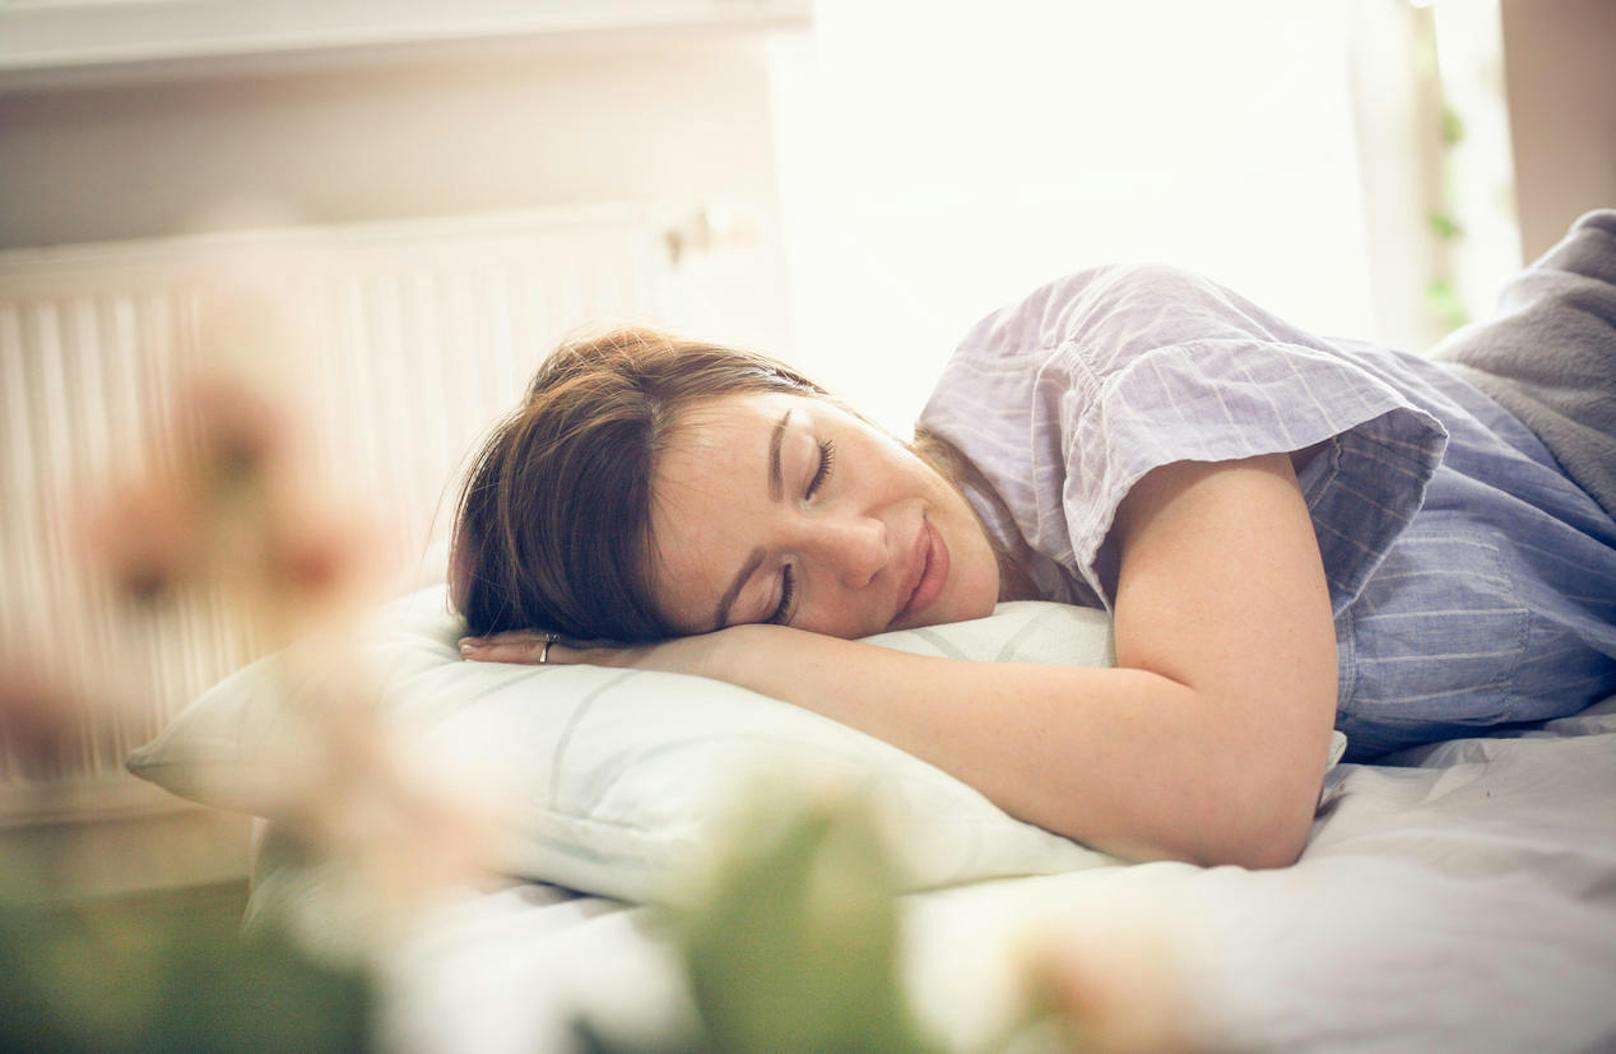 Danach bereitet sich der Körper langsam auf das natürliche Erwachen vor: Der Schlaf wird leichter, die Körperkerntemperatur steigt und auch der Pegel des Stresshormons Cortisol erhöht sich.